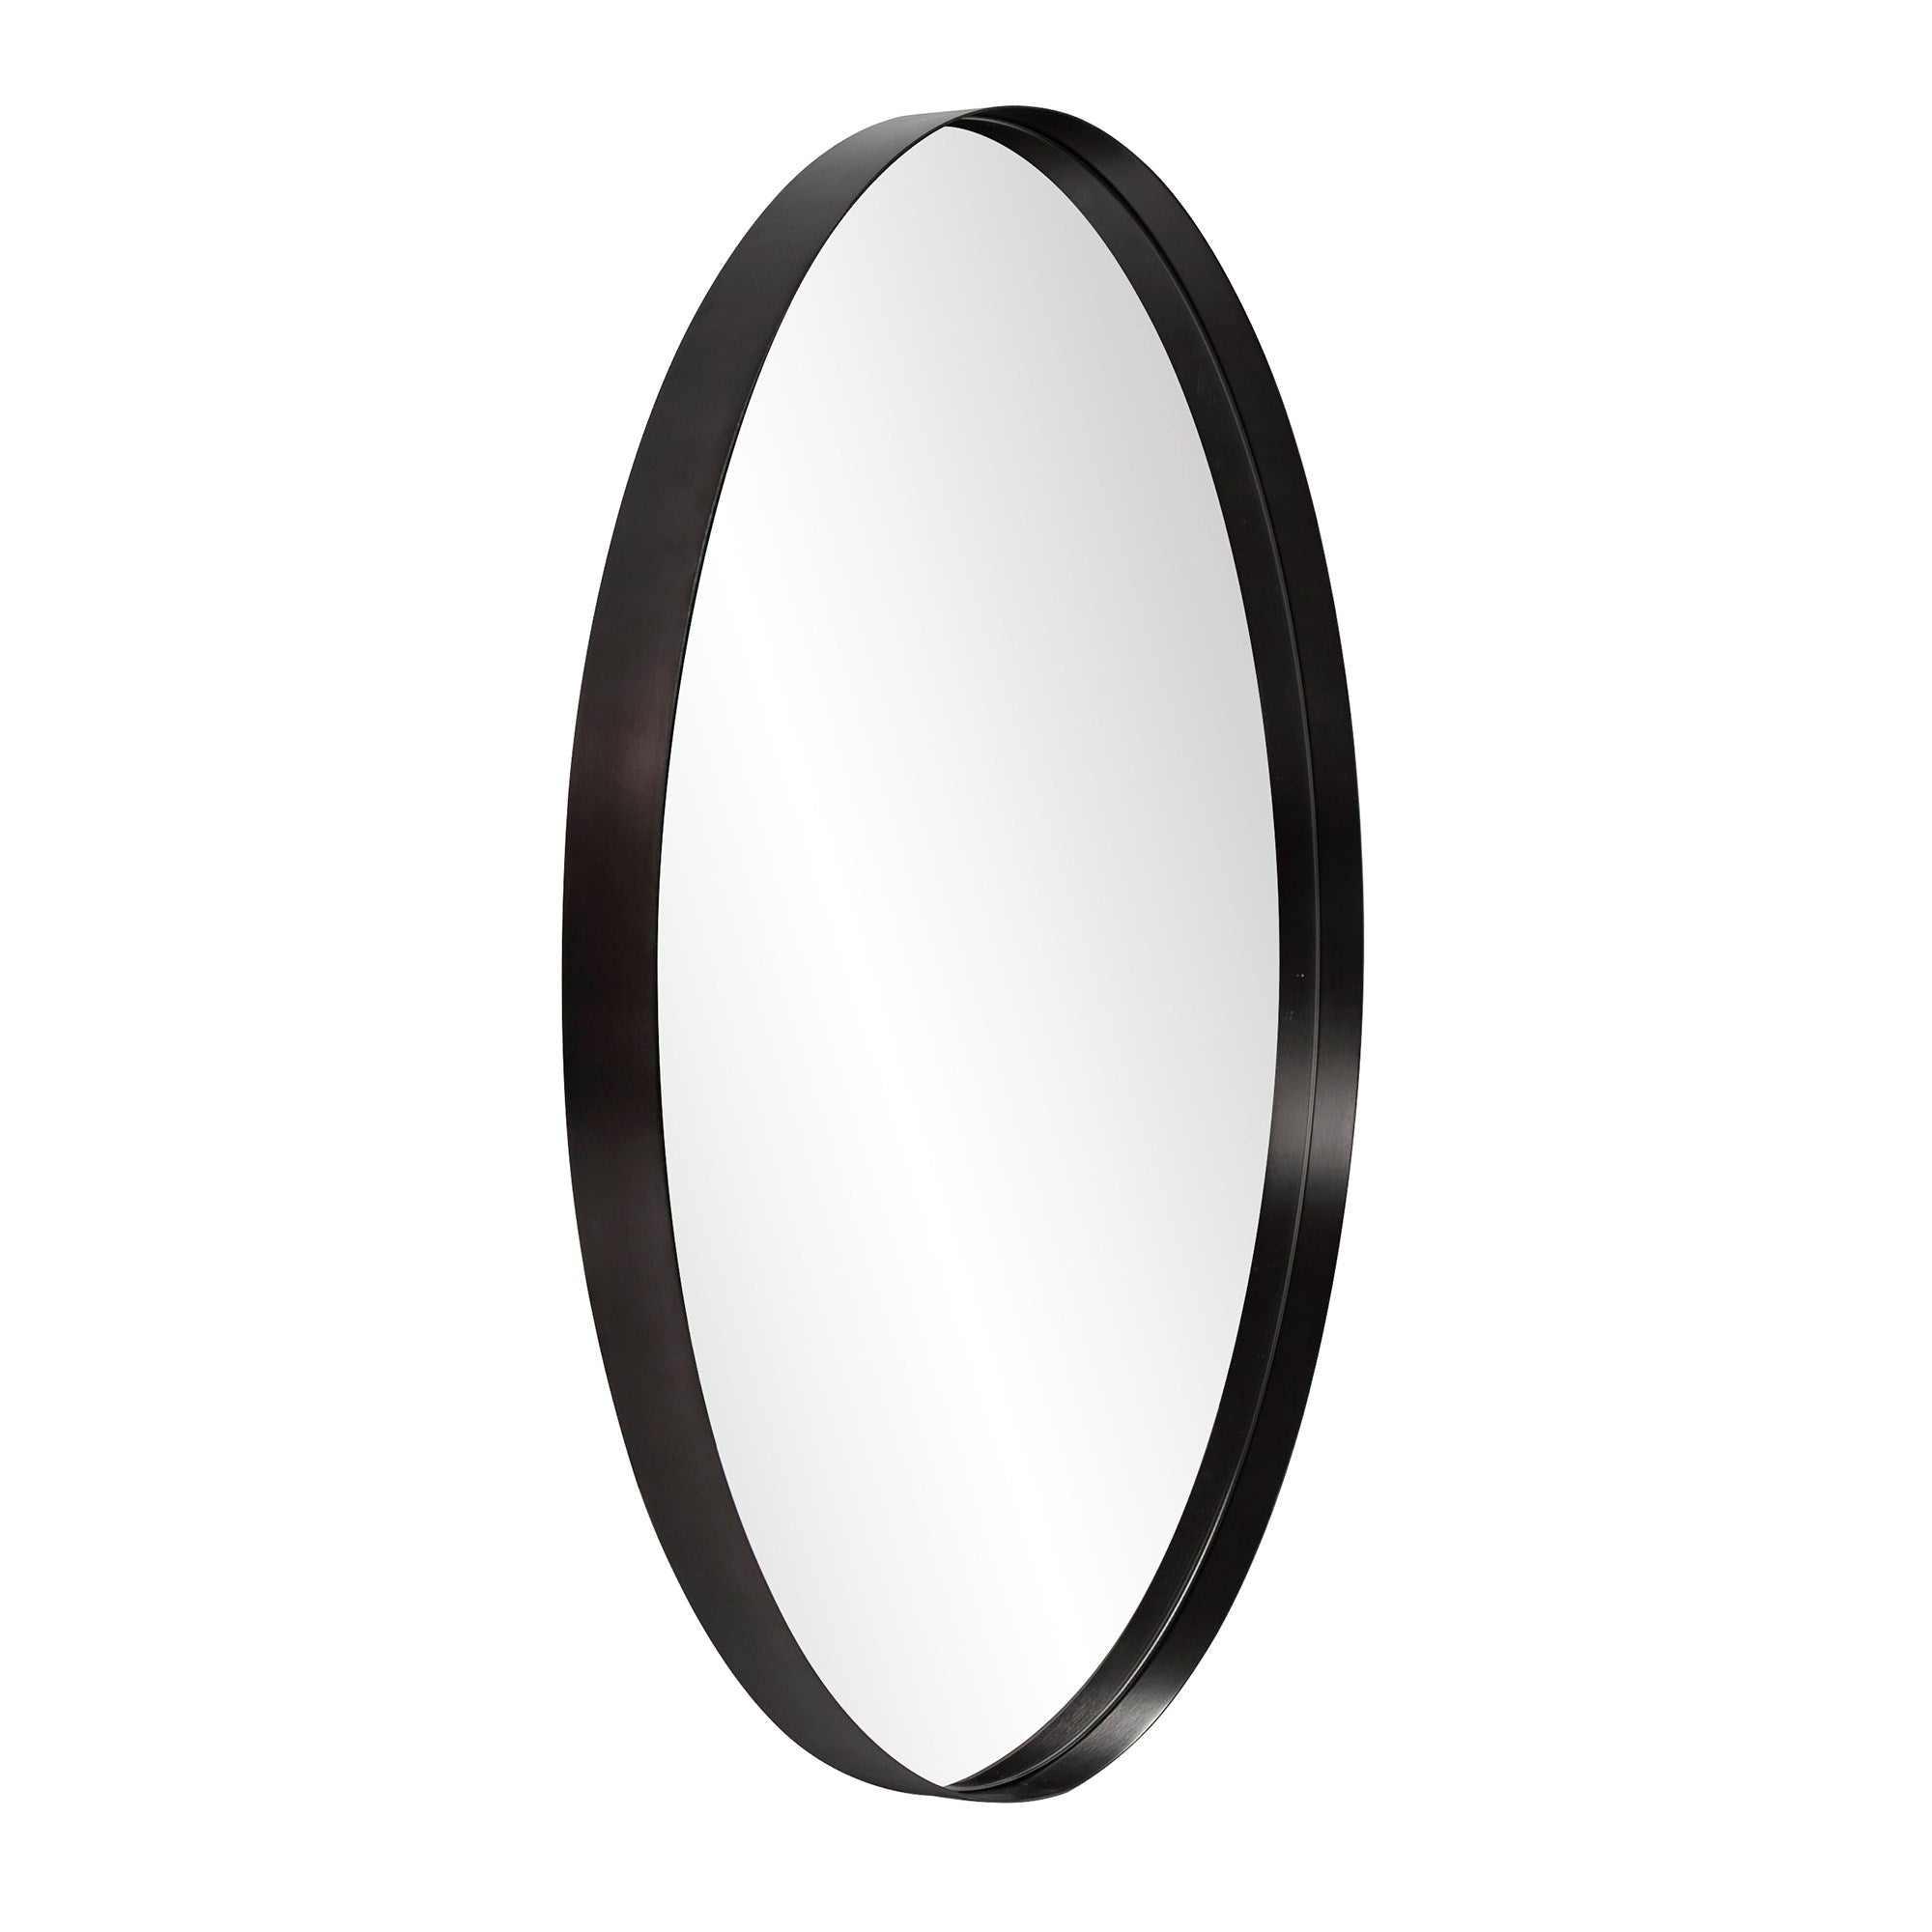 Steele Black Round Mirror